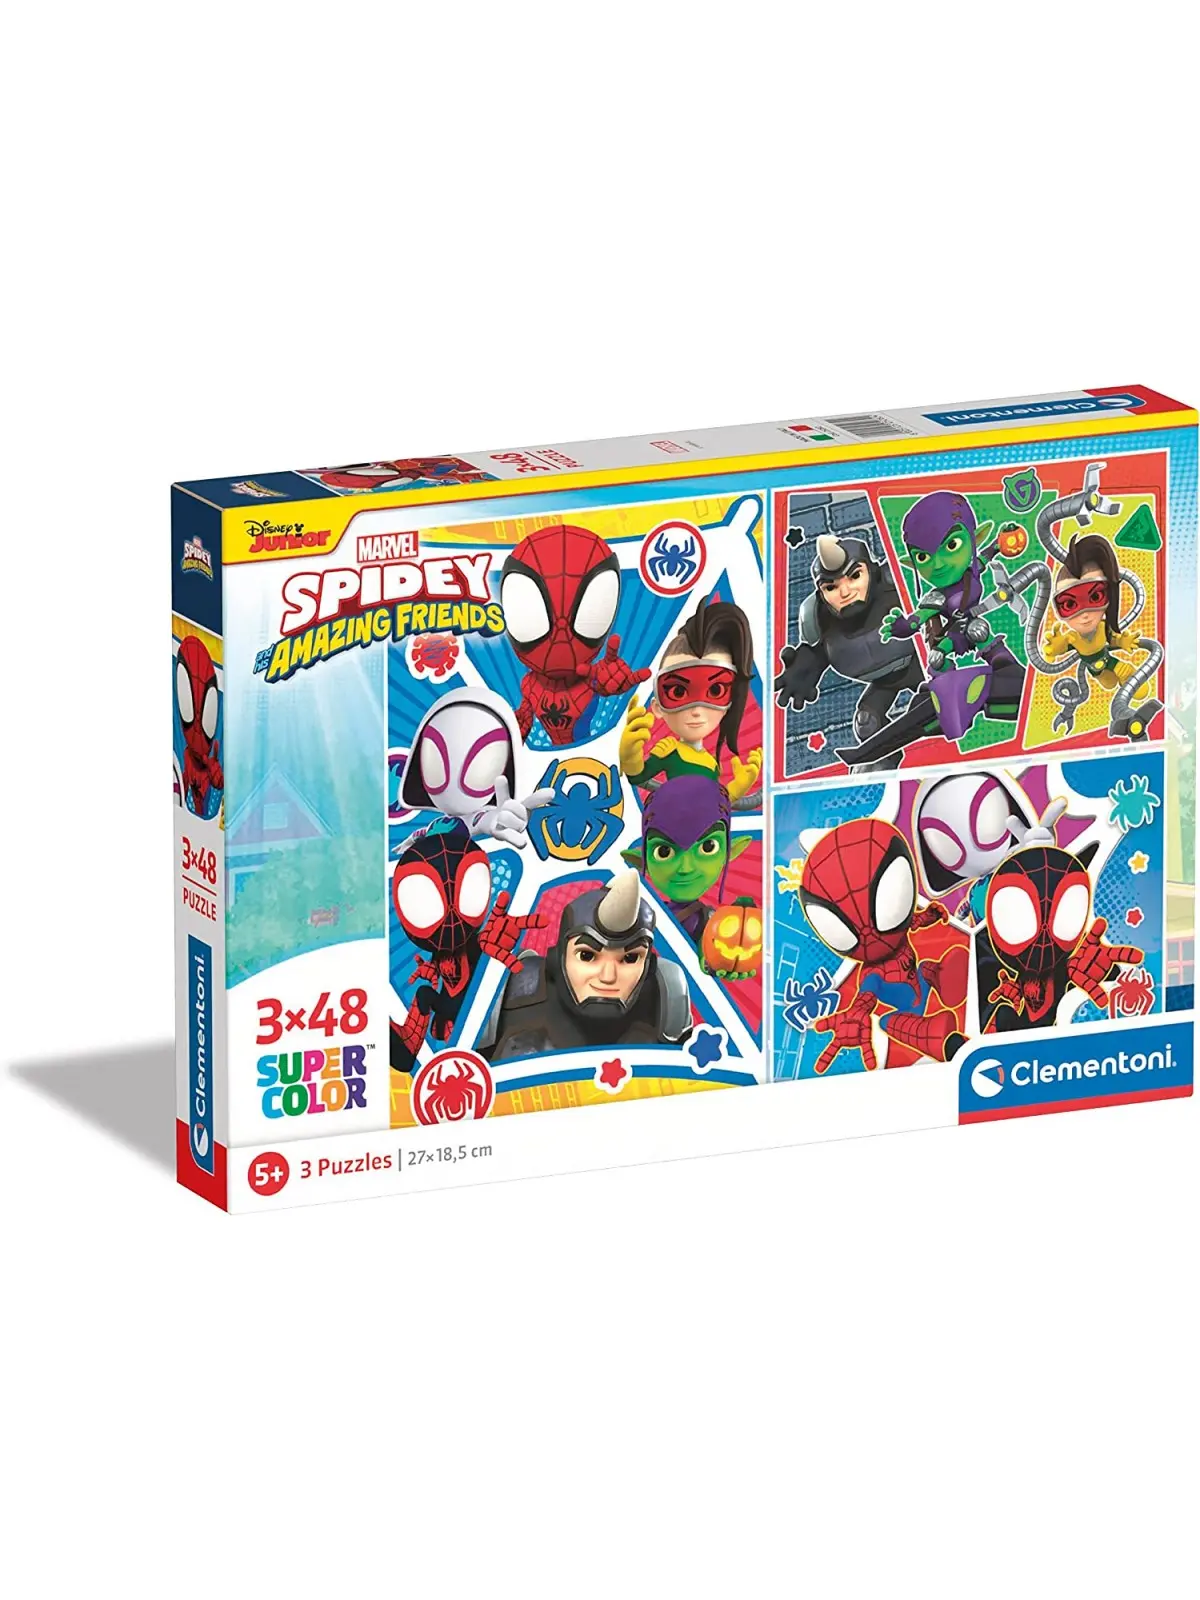 Super Color Puzzle Marvel Spidey Amazing Friends 3x48 pcs